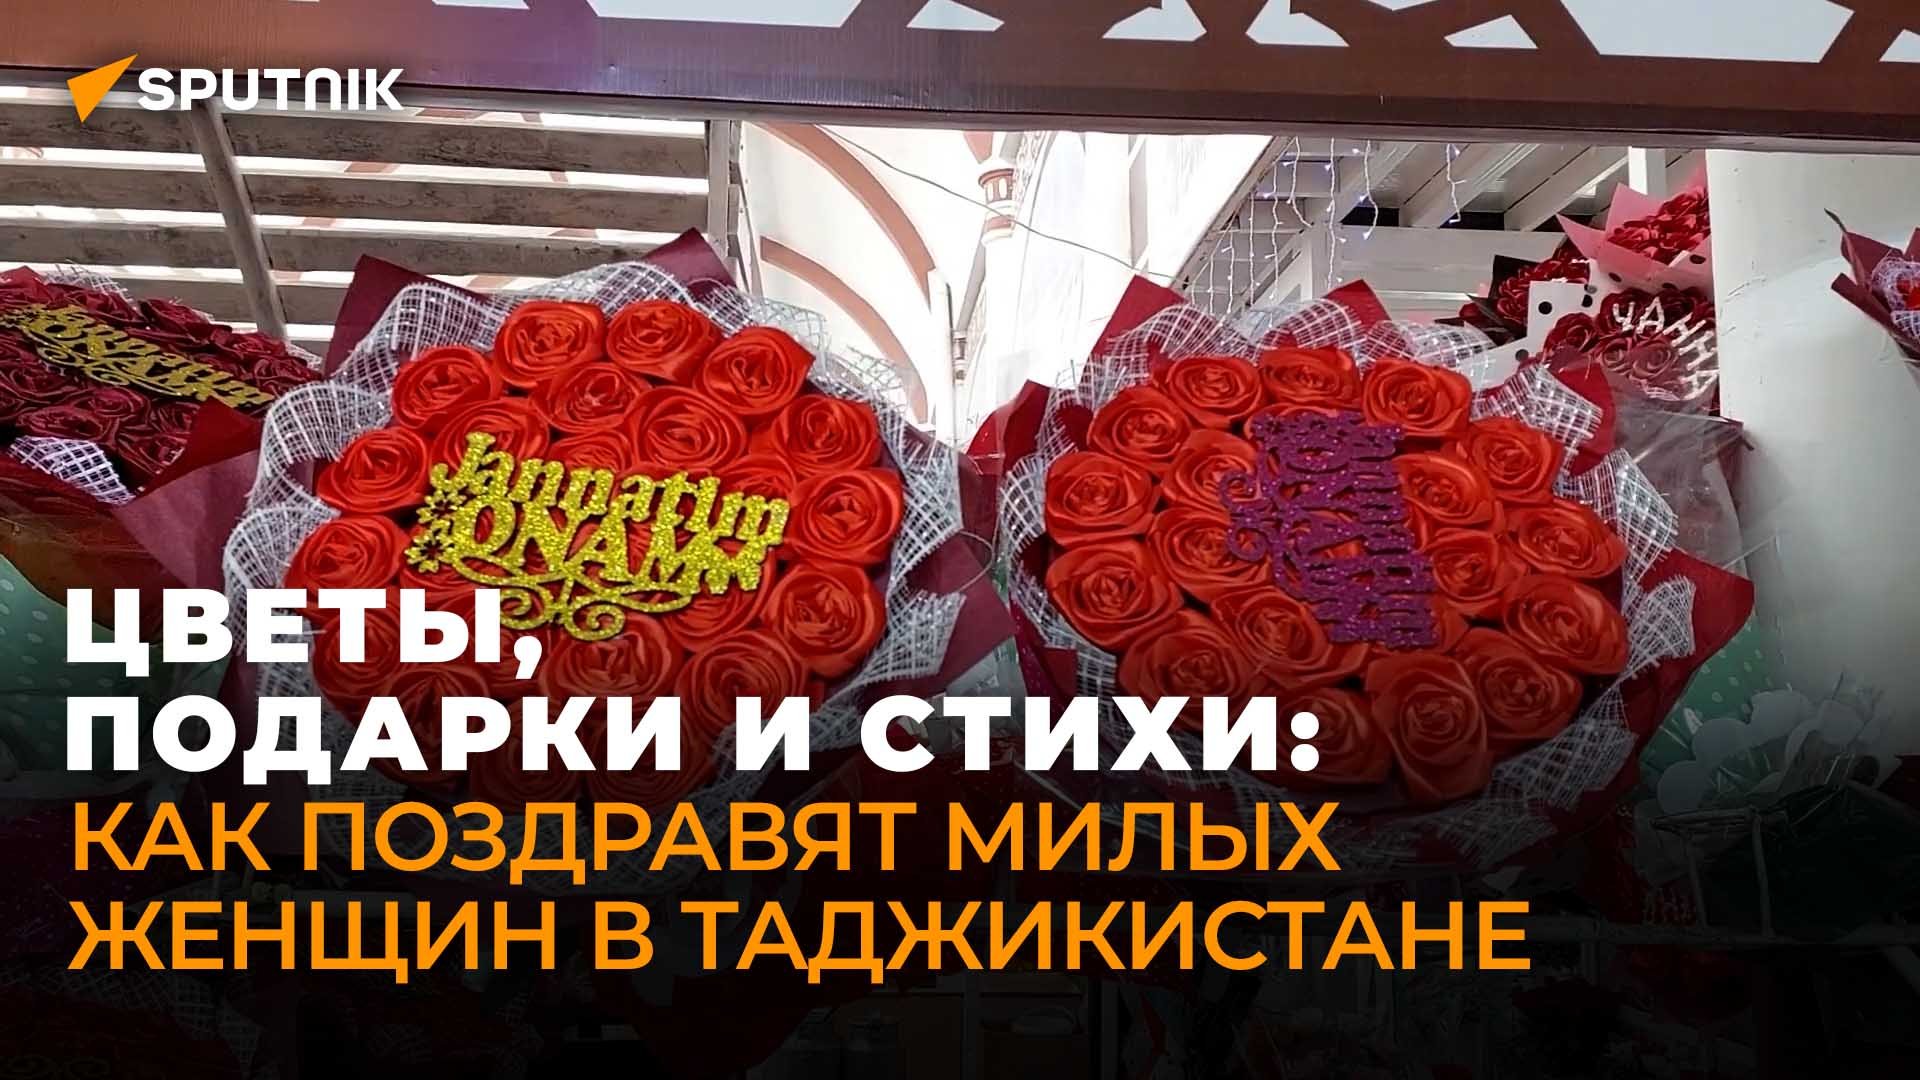 В Таджикистане готовятся к празднованию Дня матери